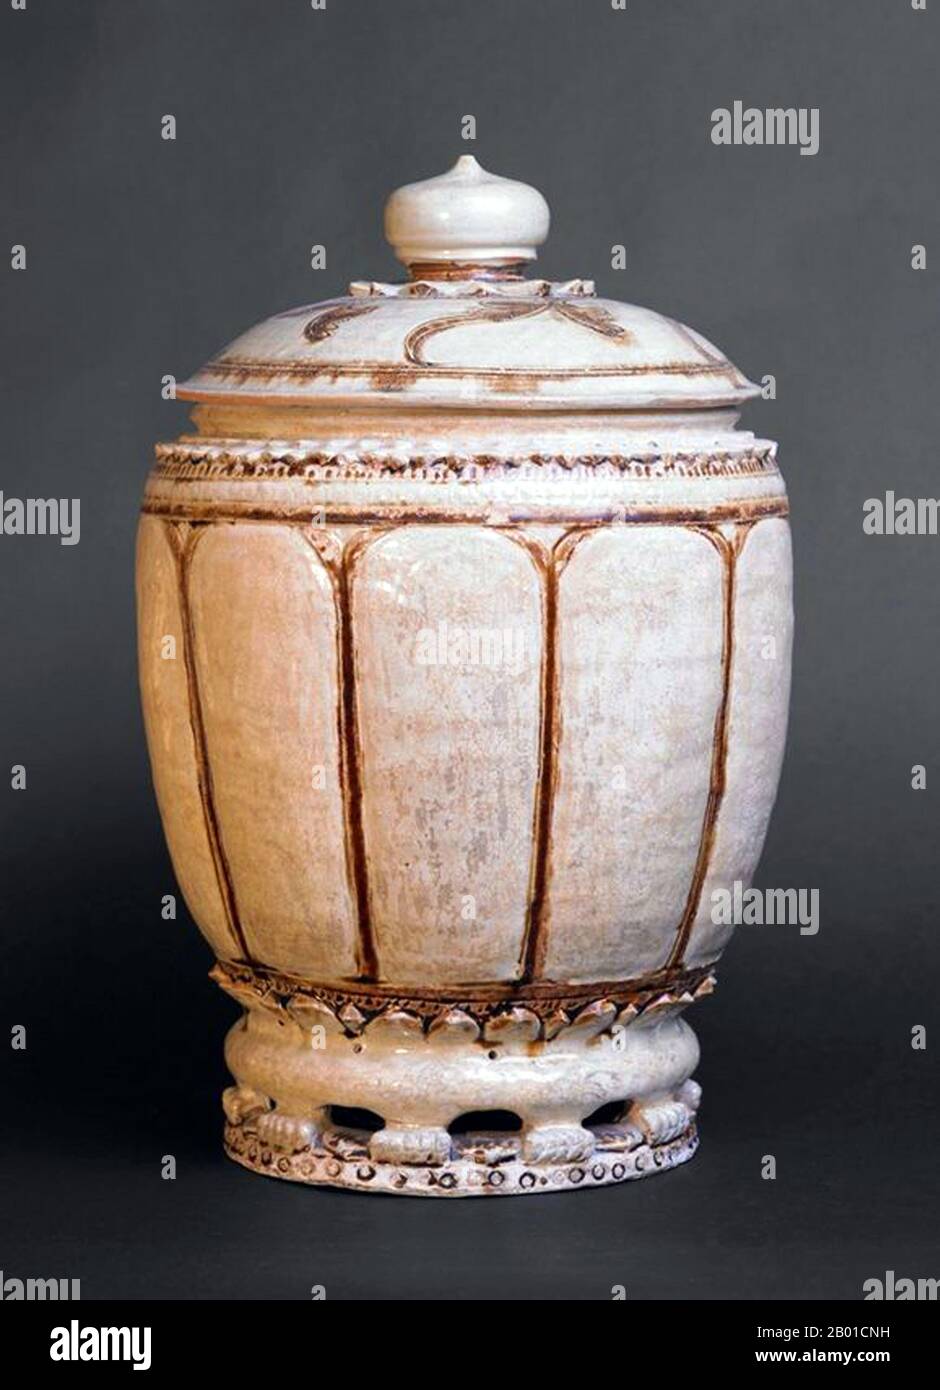 Vietnam: Großes Thanh Hoa-Glas mit Deckel. Gelappter Körper mit braunen Akzenten, der auf einem Sockel mit Netzhaut steht. Ly-Dynastie (ca. 1000-1200). Die Keramik vom Typ Thanh Hoa, die vom elften bis zum dreizehnten Jahrhundert hergestellt wurde, ist einzigartig in der asiatischen Keramik, da sie kulturelle Einflüsse aus Indien und China repräsentieren. Unter Verwendung fortschrittlicher Brenn- und Verglasungstechniken aus China wurden ihre Formen oft von indischen Bronzen beeinflusst, die manchmal durch kambodschanische Werke gefiltert wurden und über die südlichen Handelsrouten aufgezogen wurden. Stockfoto